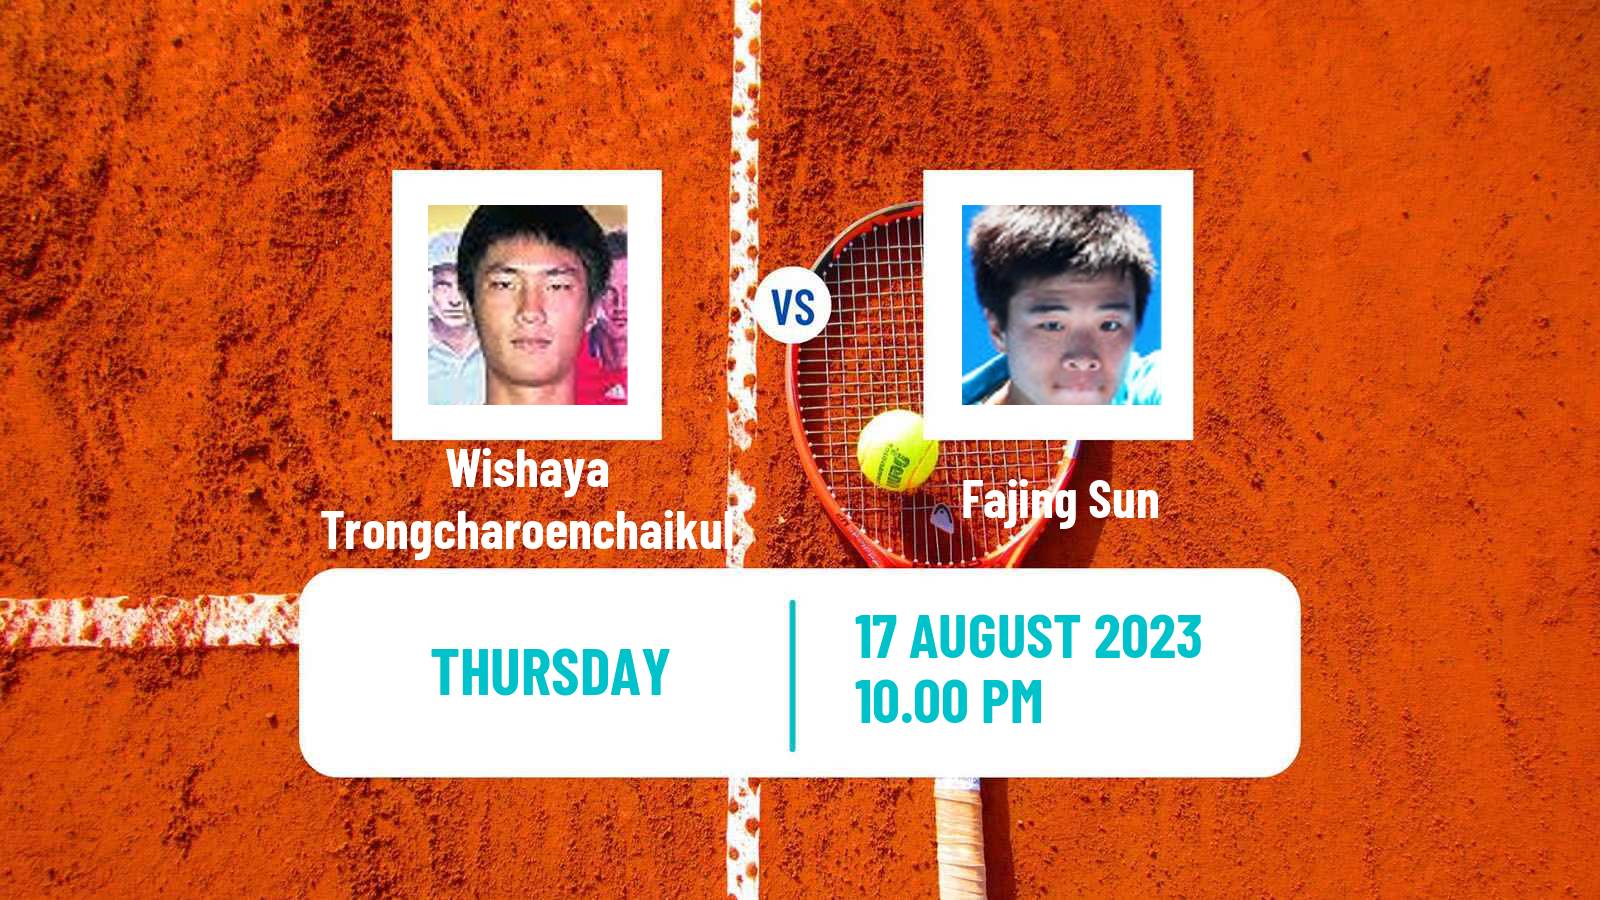 Tennis ITF M25 Yinchuan Men Wishaya Trongcharoenchaikul - Fajing Sun